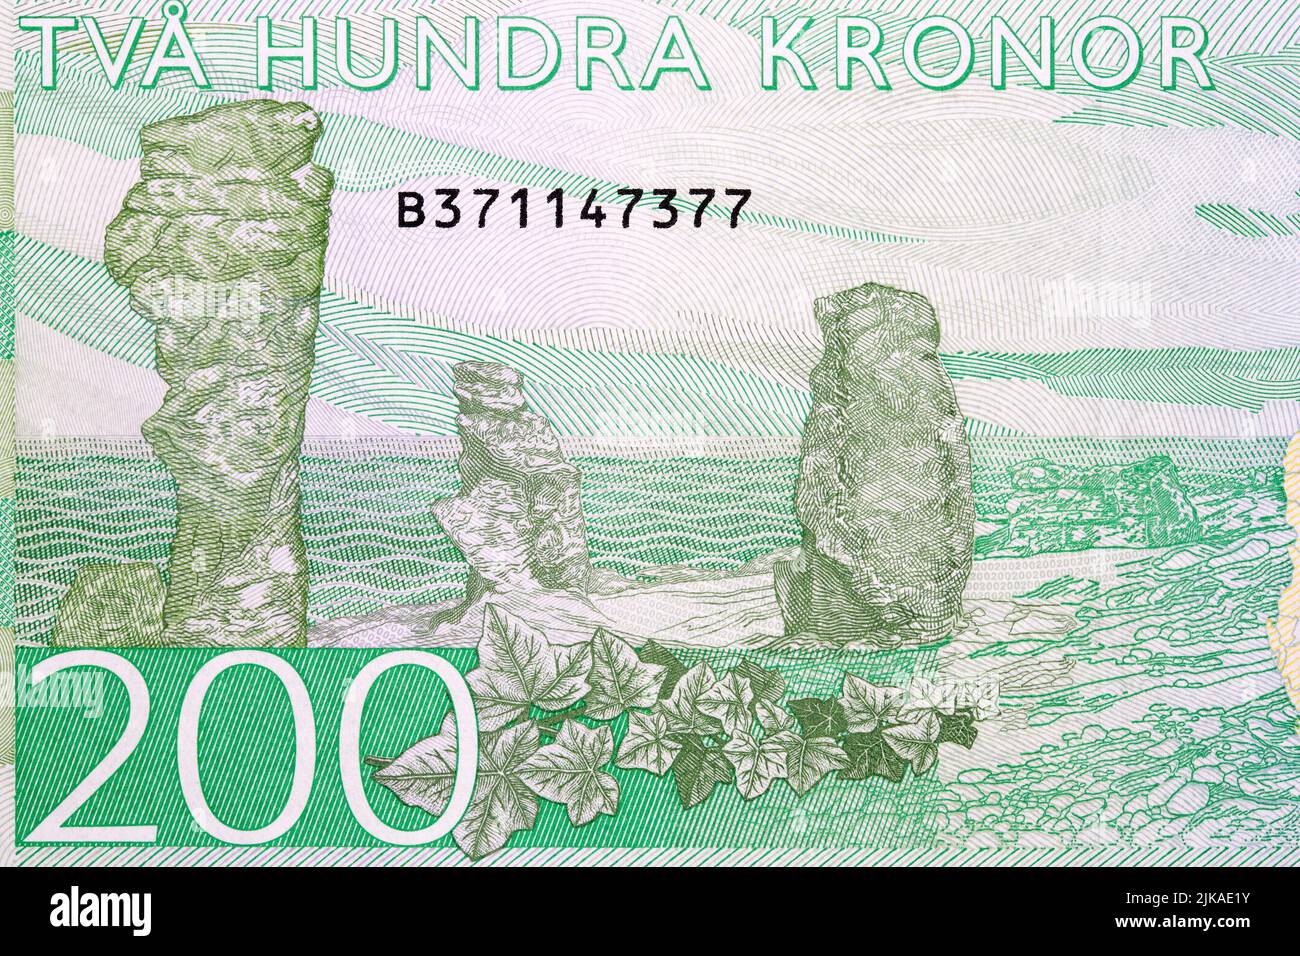 Formazioni rocciose sulle Isole Gotland da denaro svedese - Crown Foto Stock